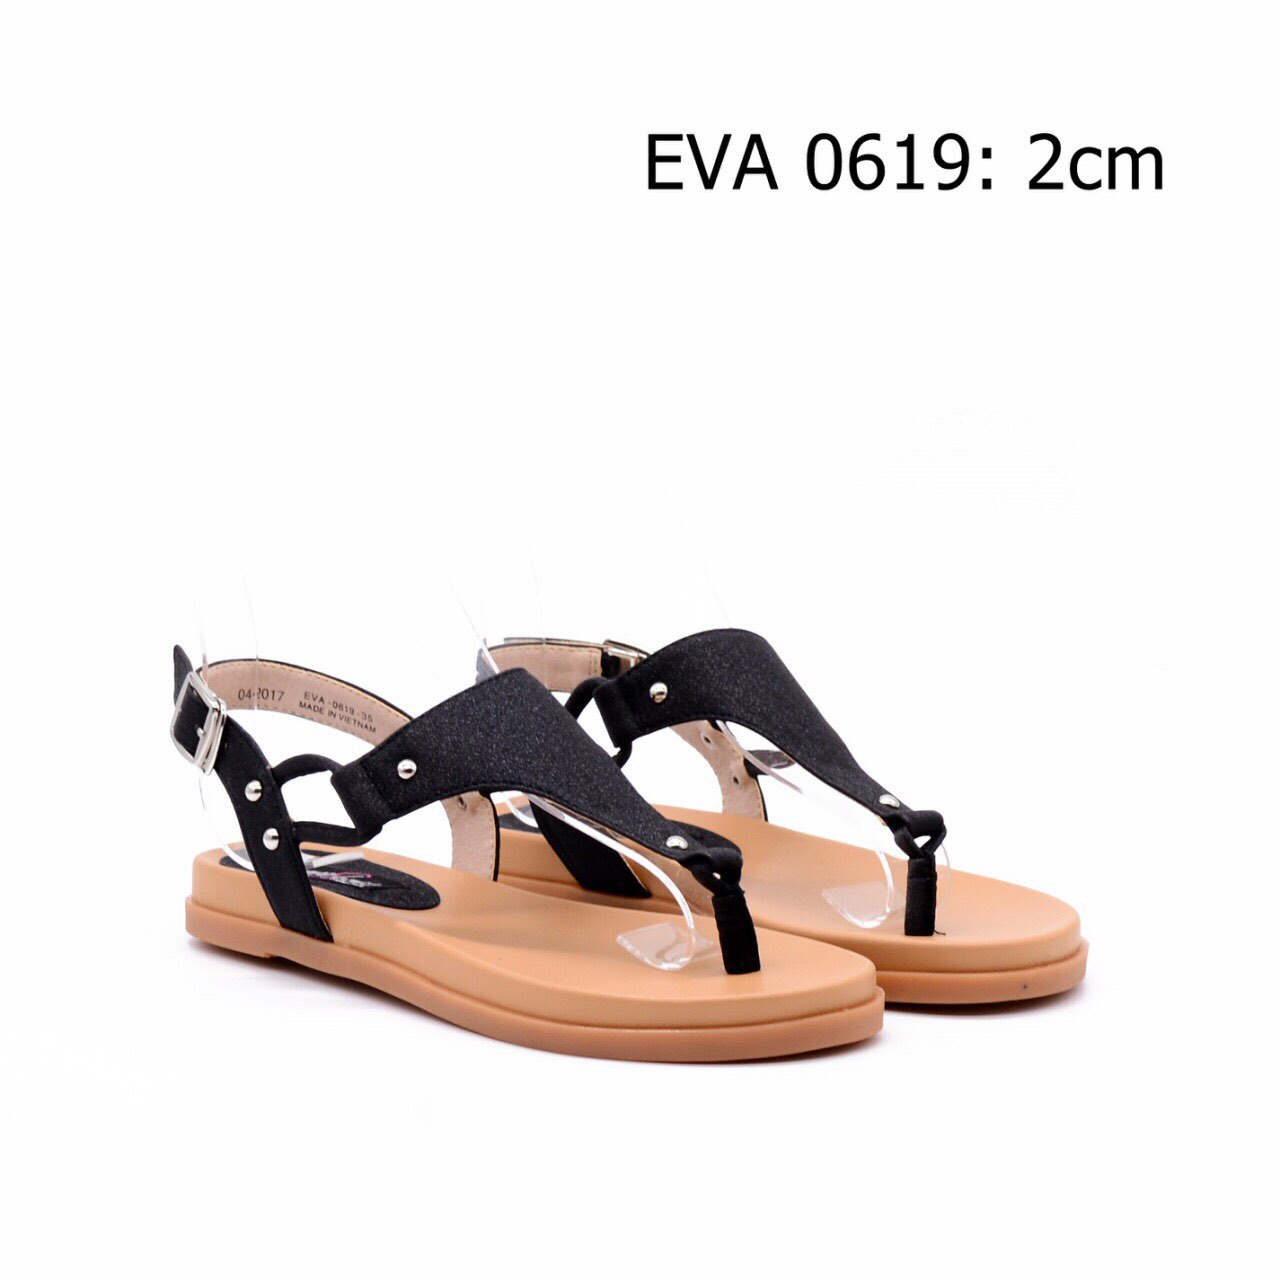 Sandal xỏ ngón xinh xắn EVA0619.